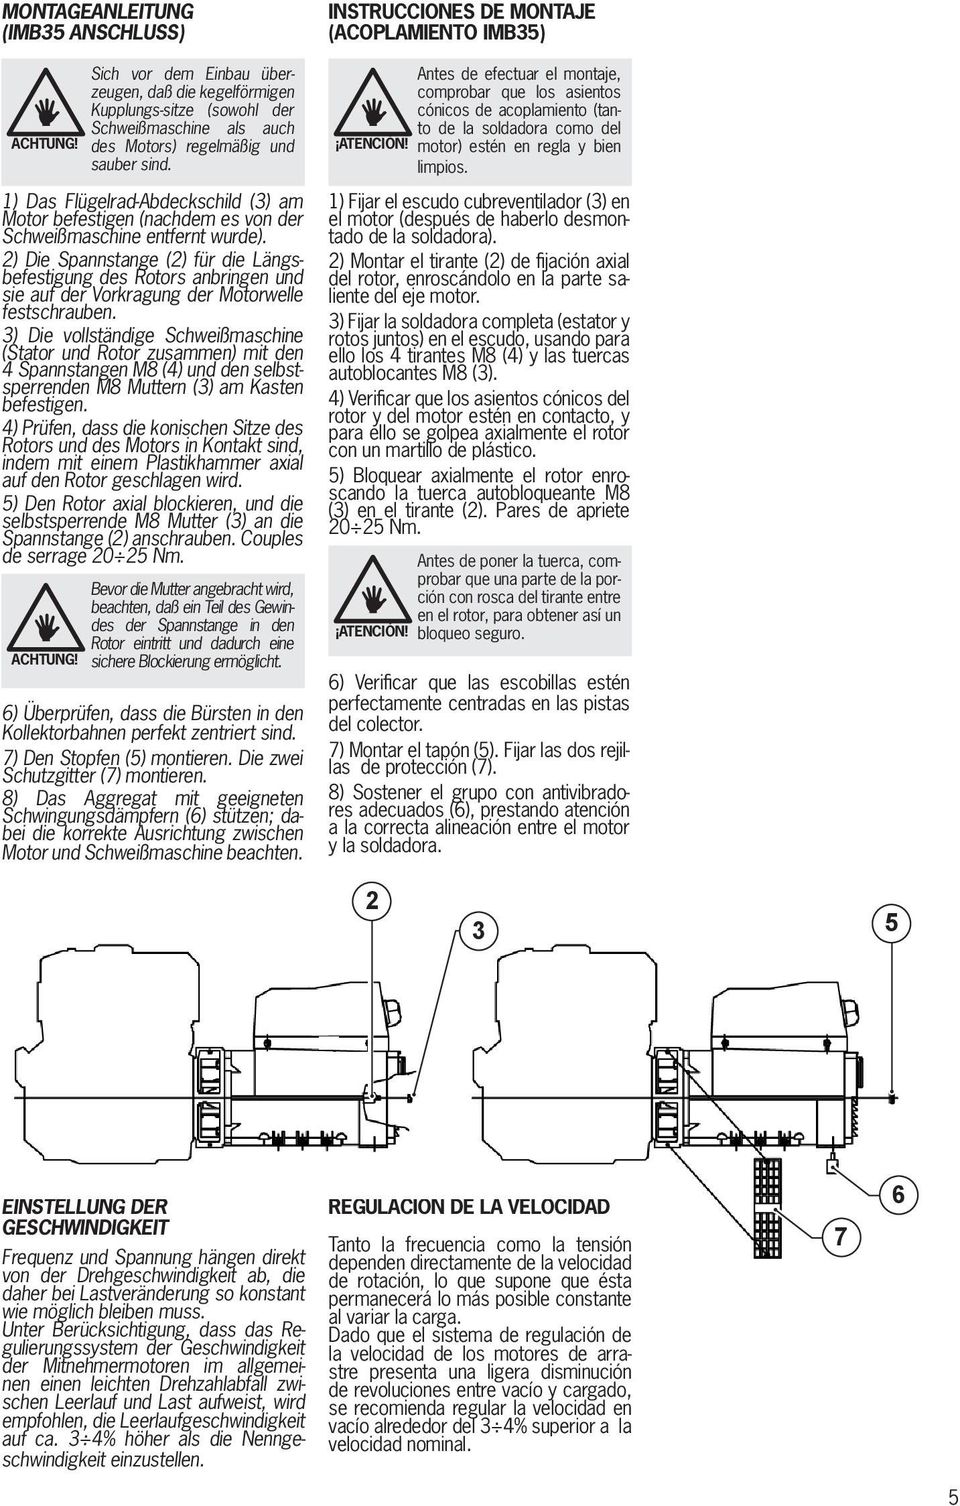 2) Die Spannstange (2) für die Längsbefestigung des Rotors anbringen und sie auf der Vorkragung der Motorwelle festschrauben.